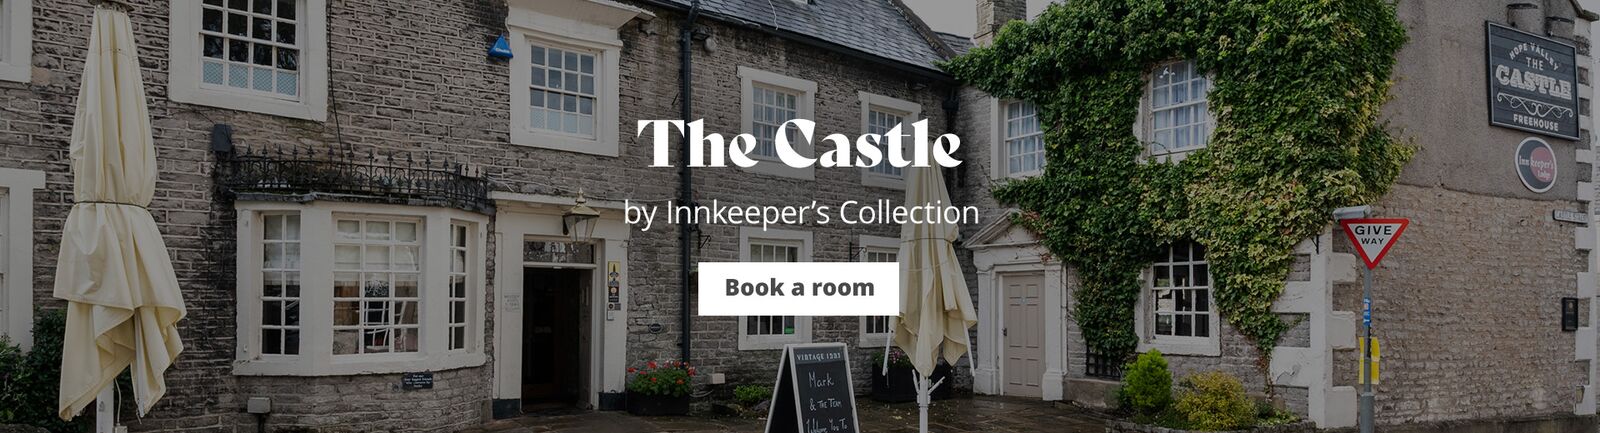 The Castle, Castleton